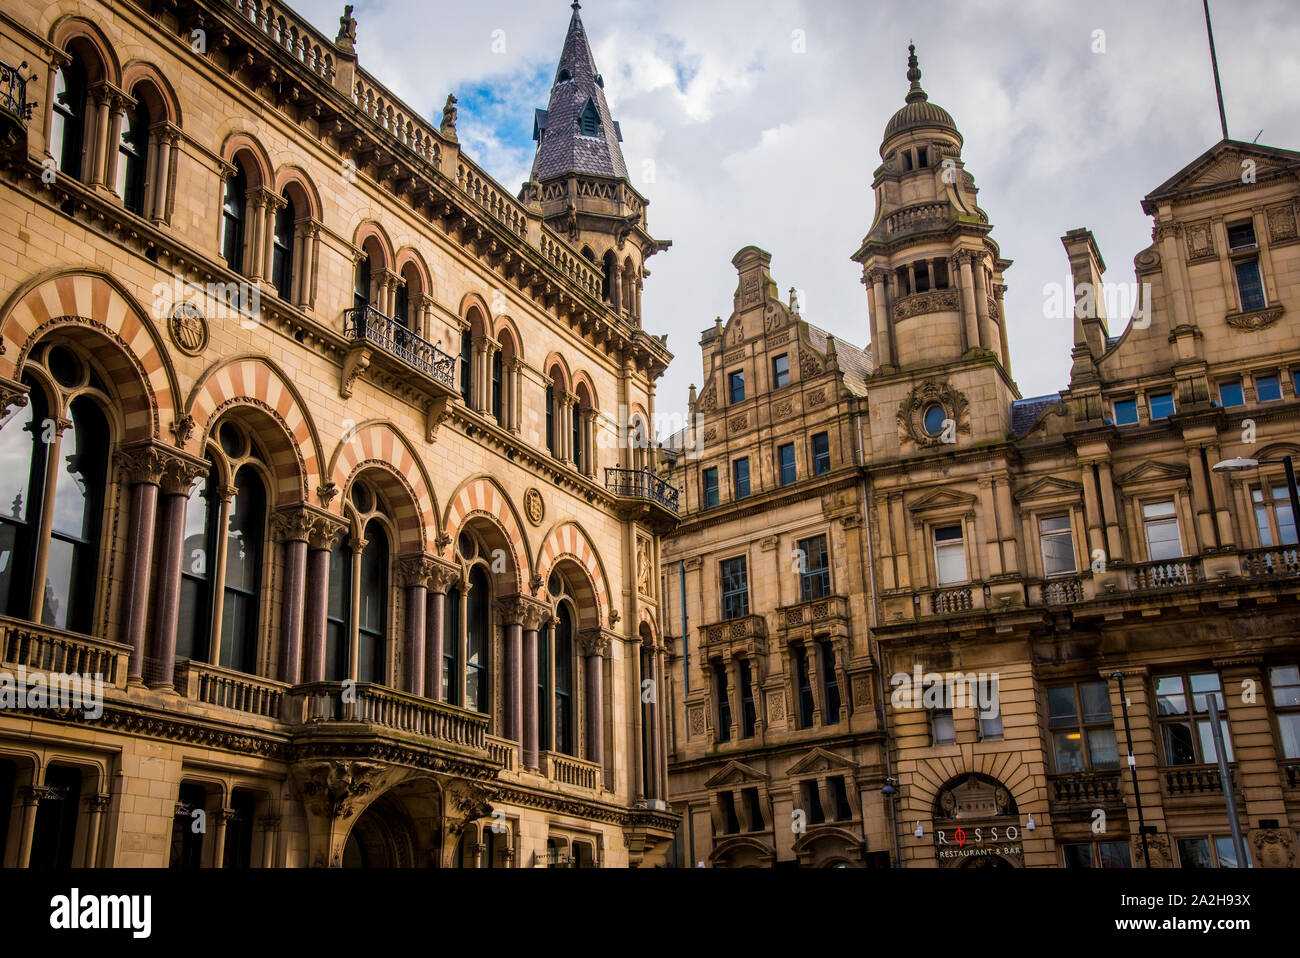 Edifici gotici in Manchester, Regno Unito Foto Stock